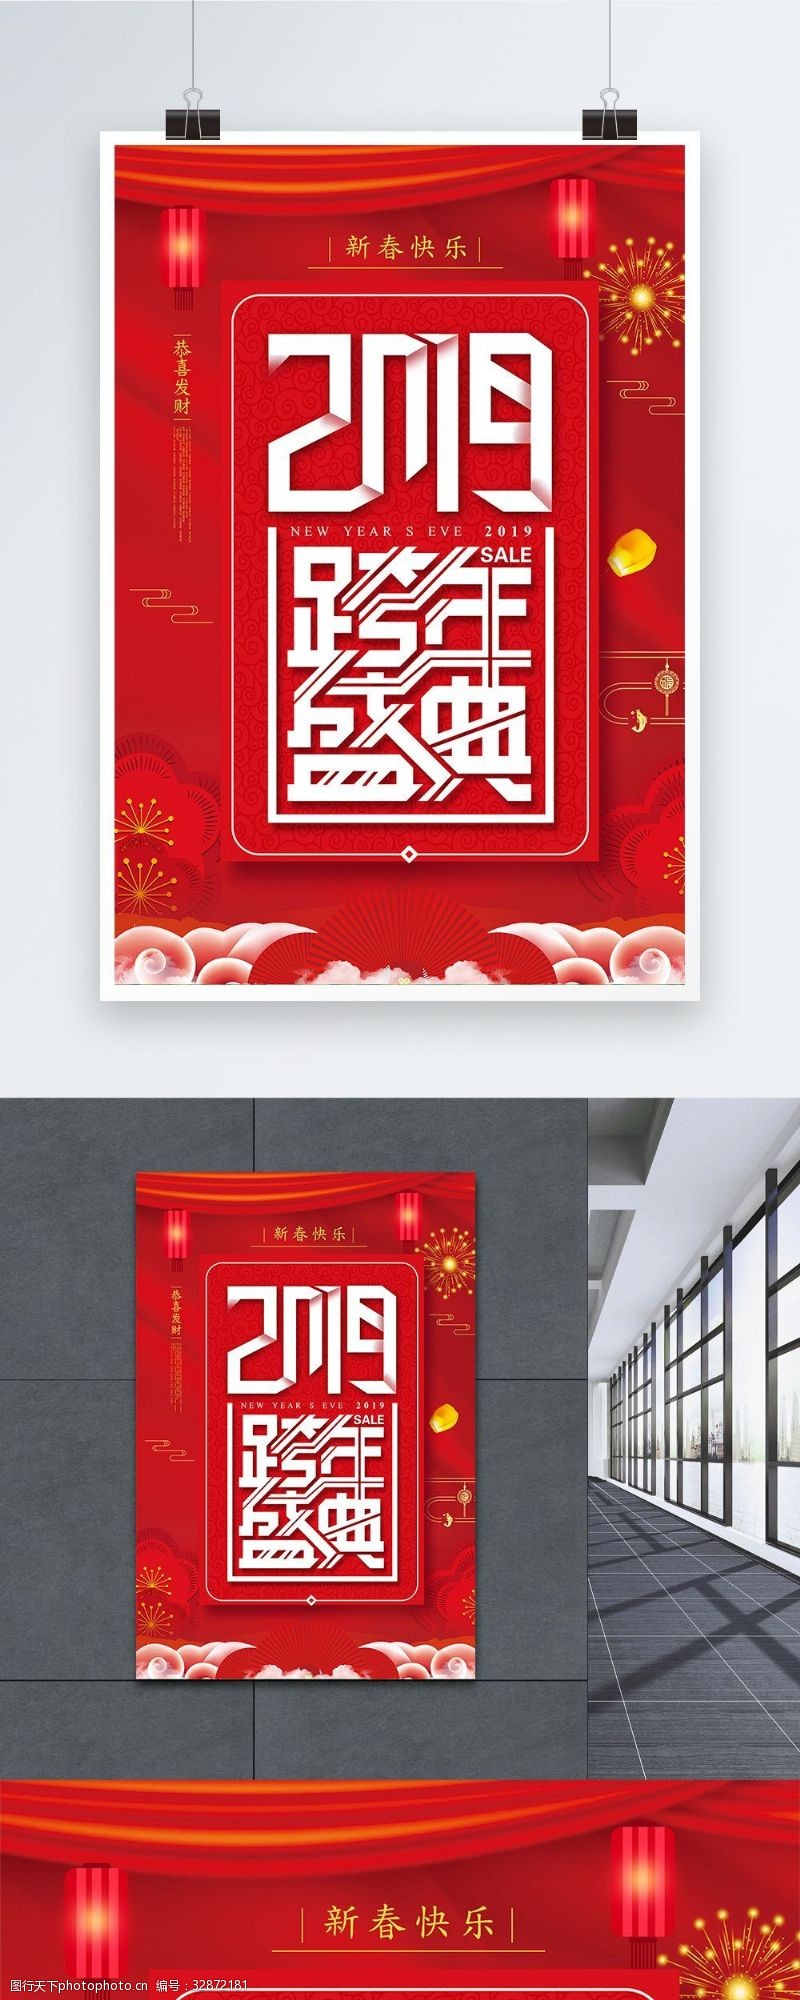 荣耀20192019跨年盛典海报